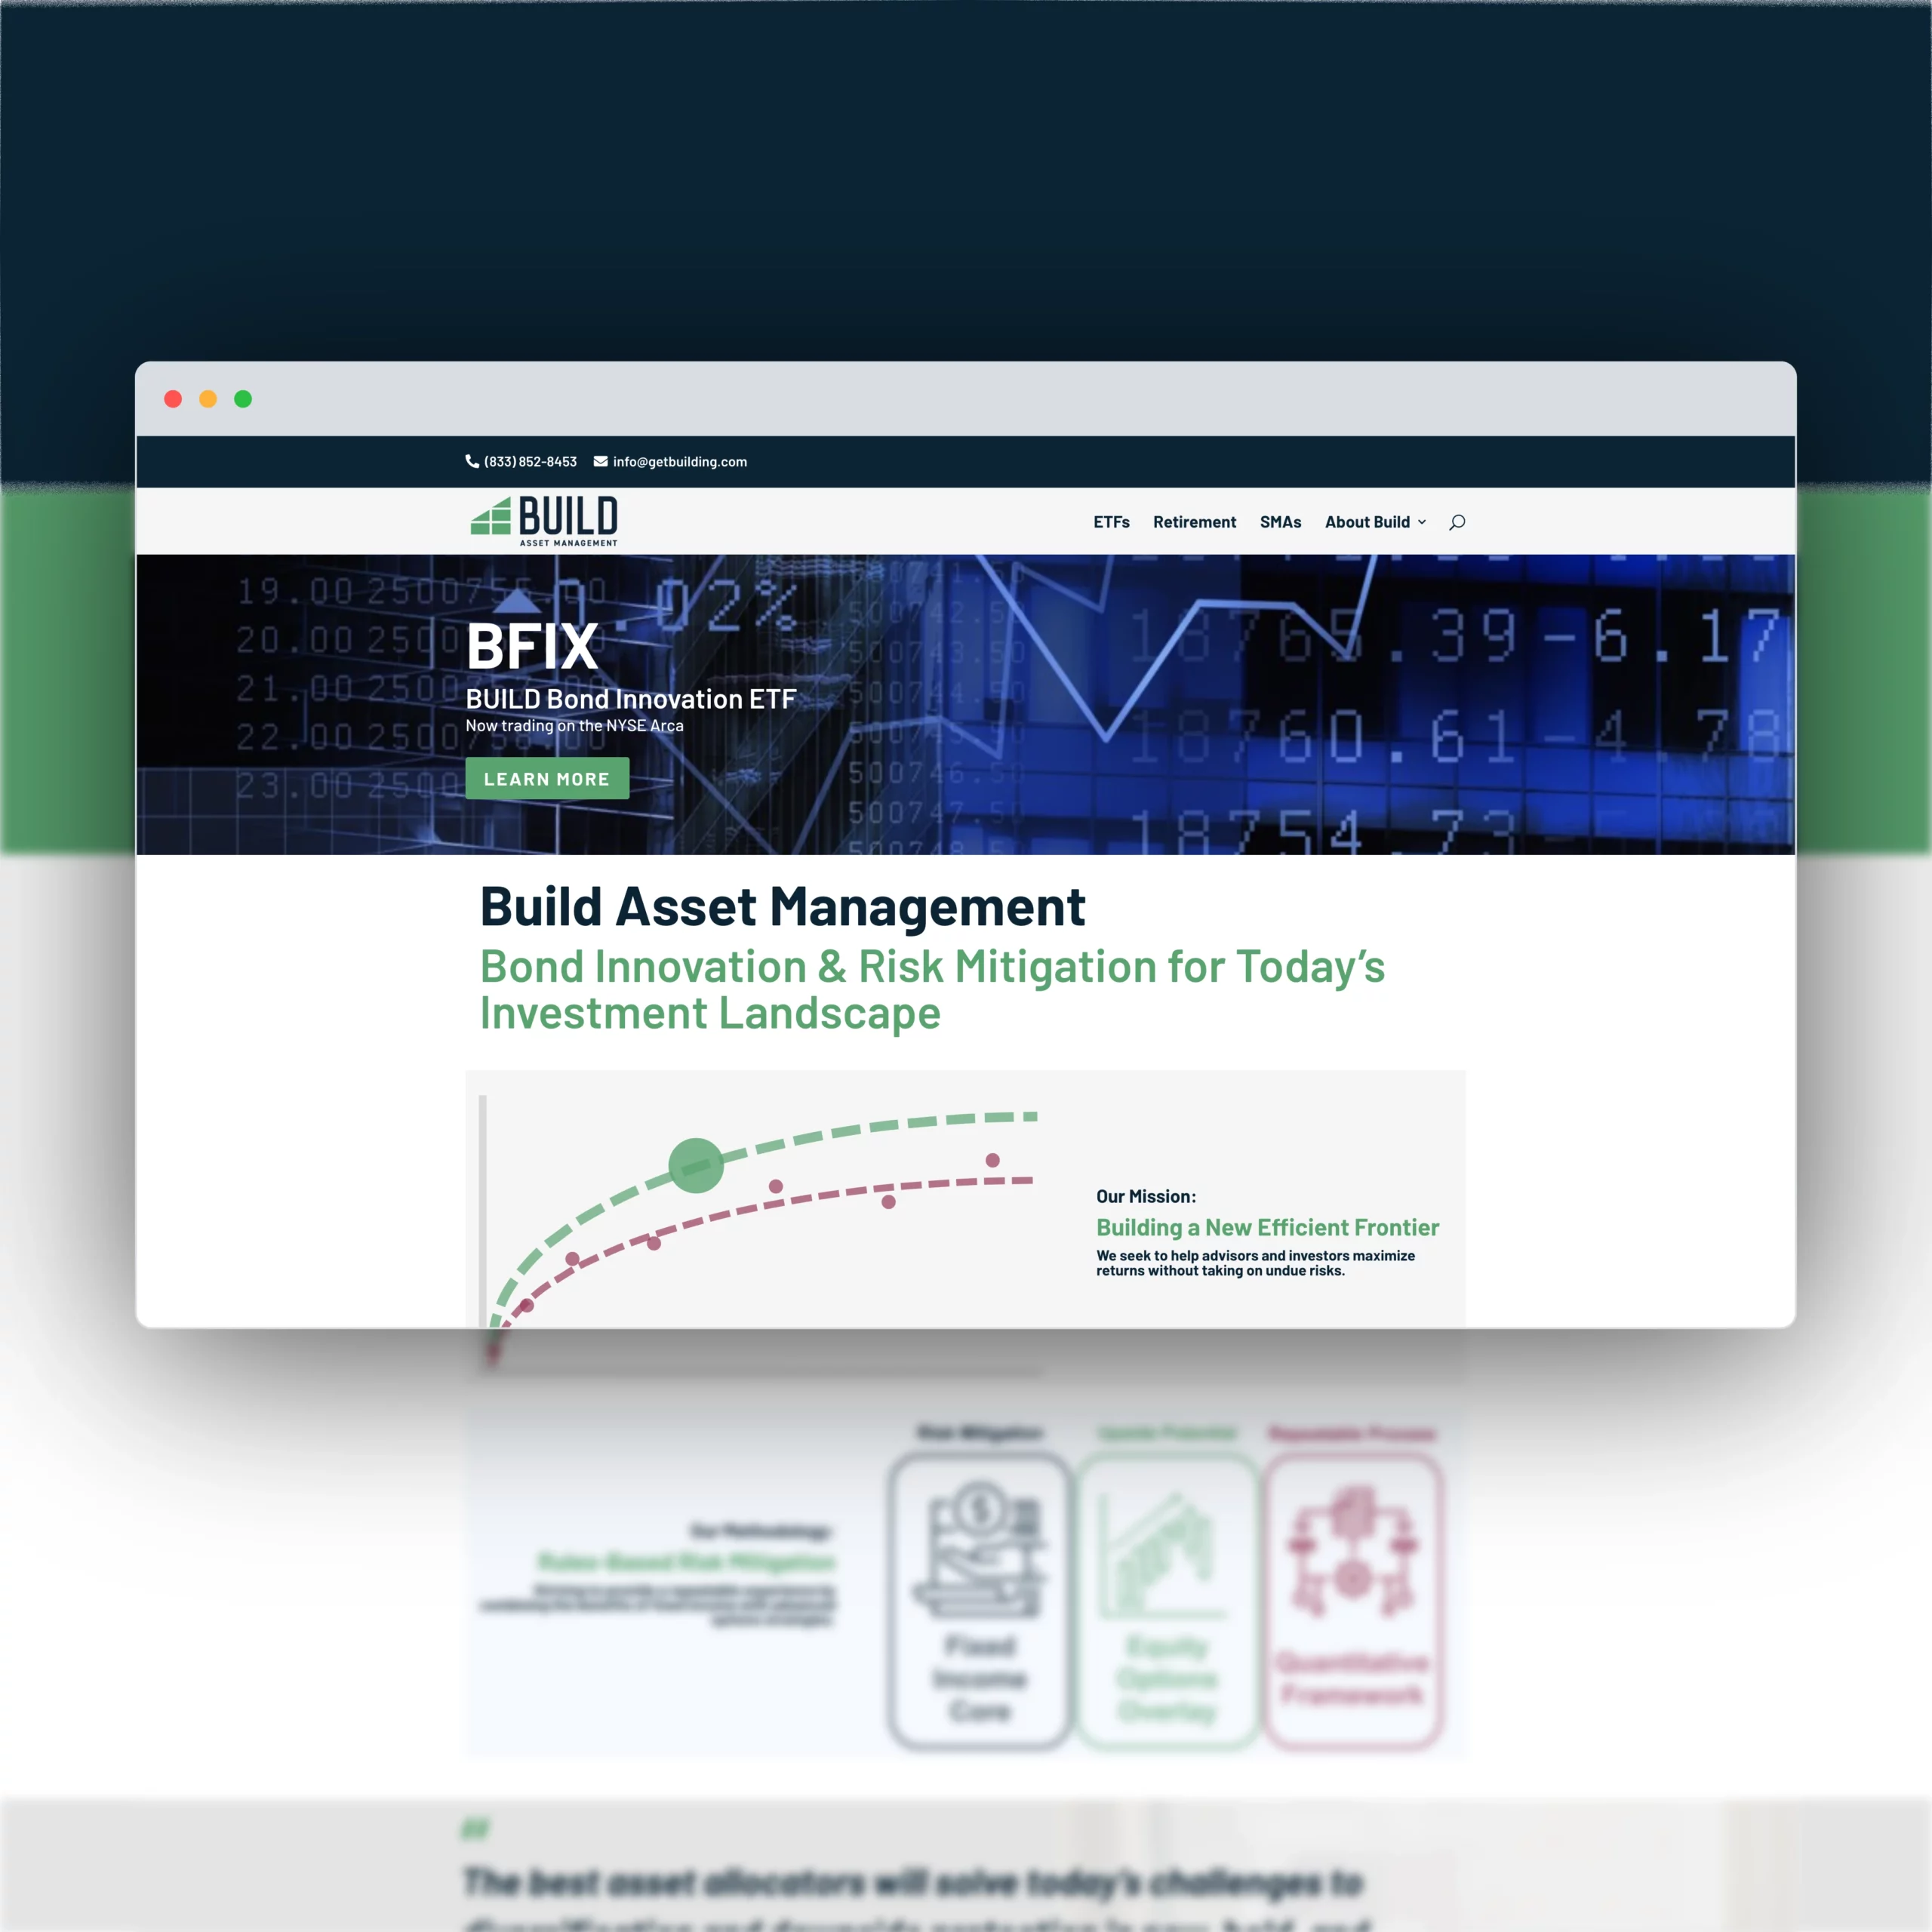  Build Asset Management Website Design 